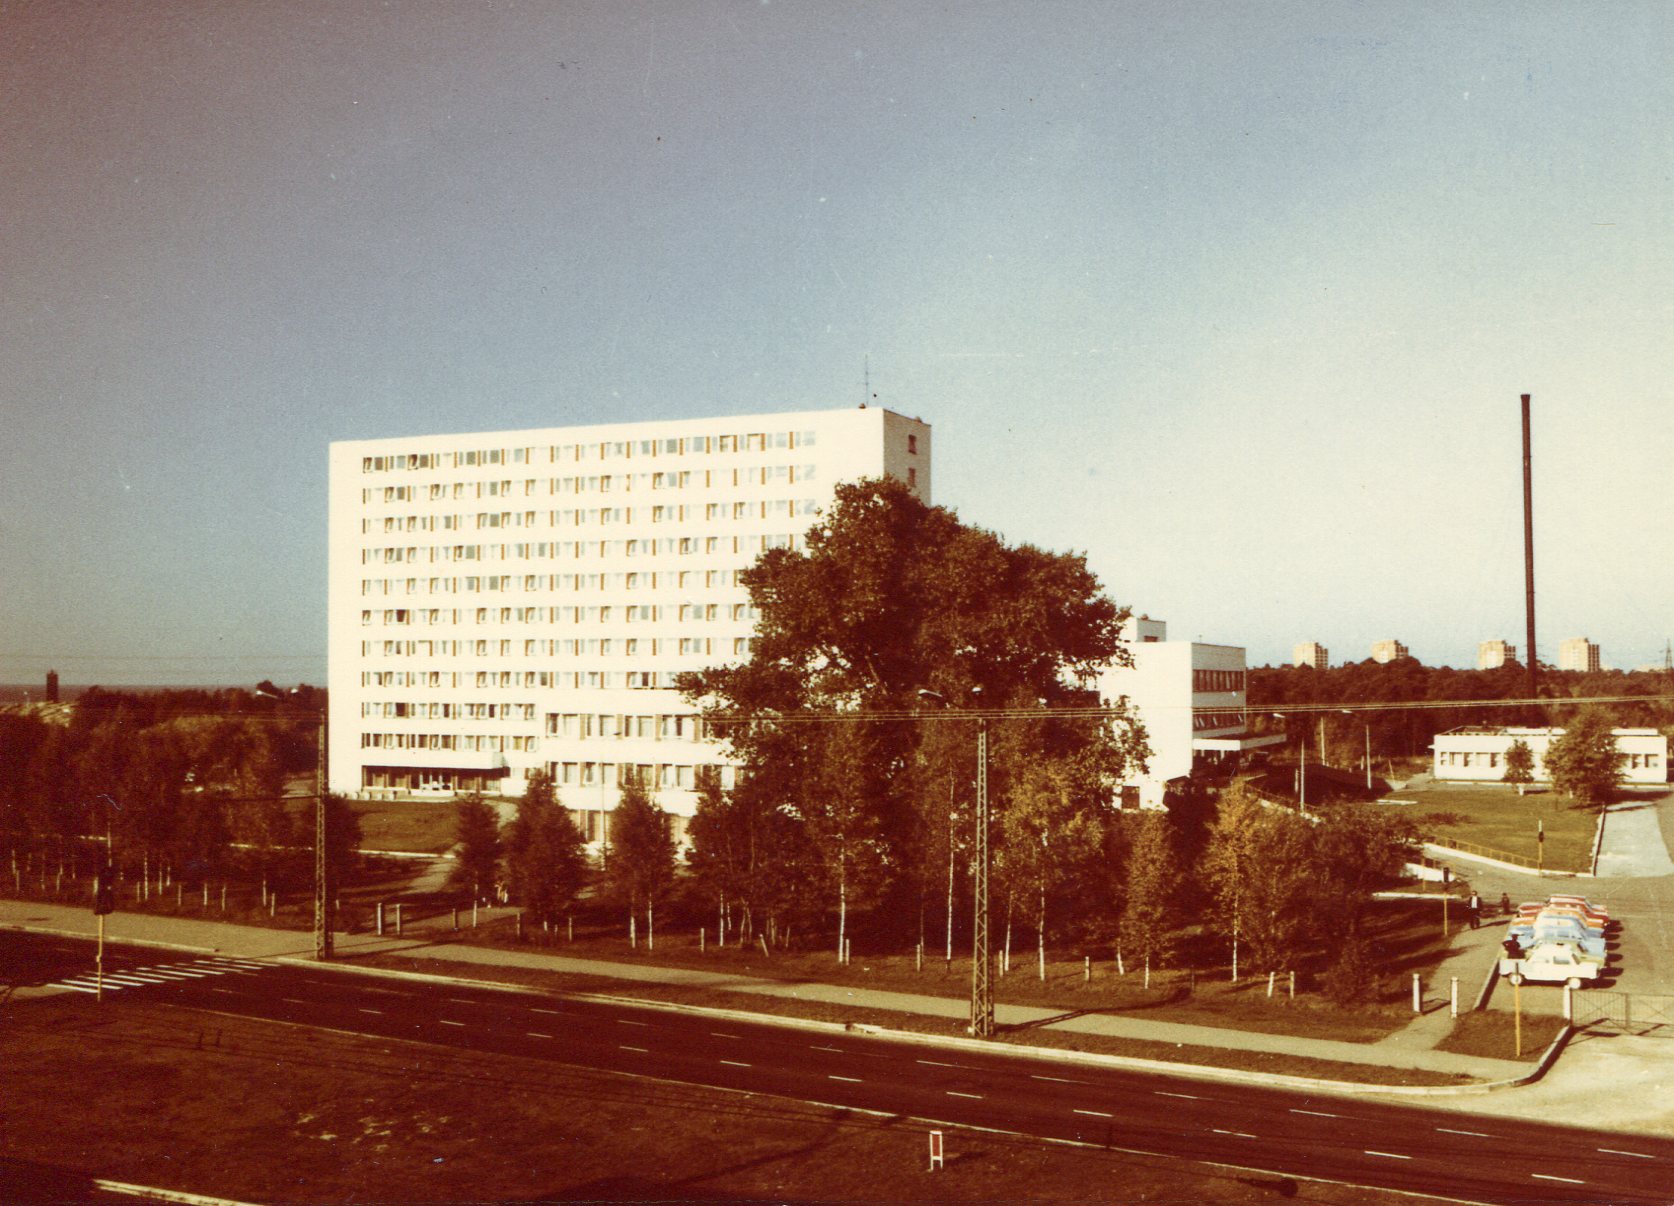 External view of the Republican Port Hospital of Tallinn